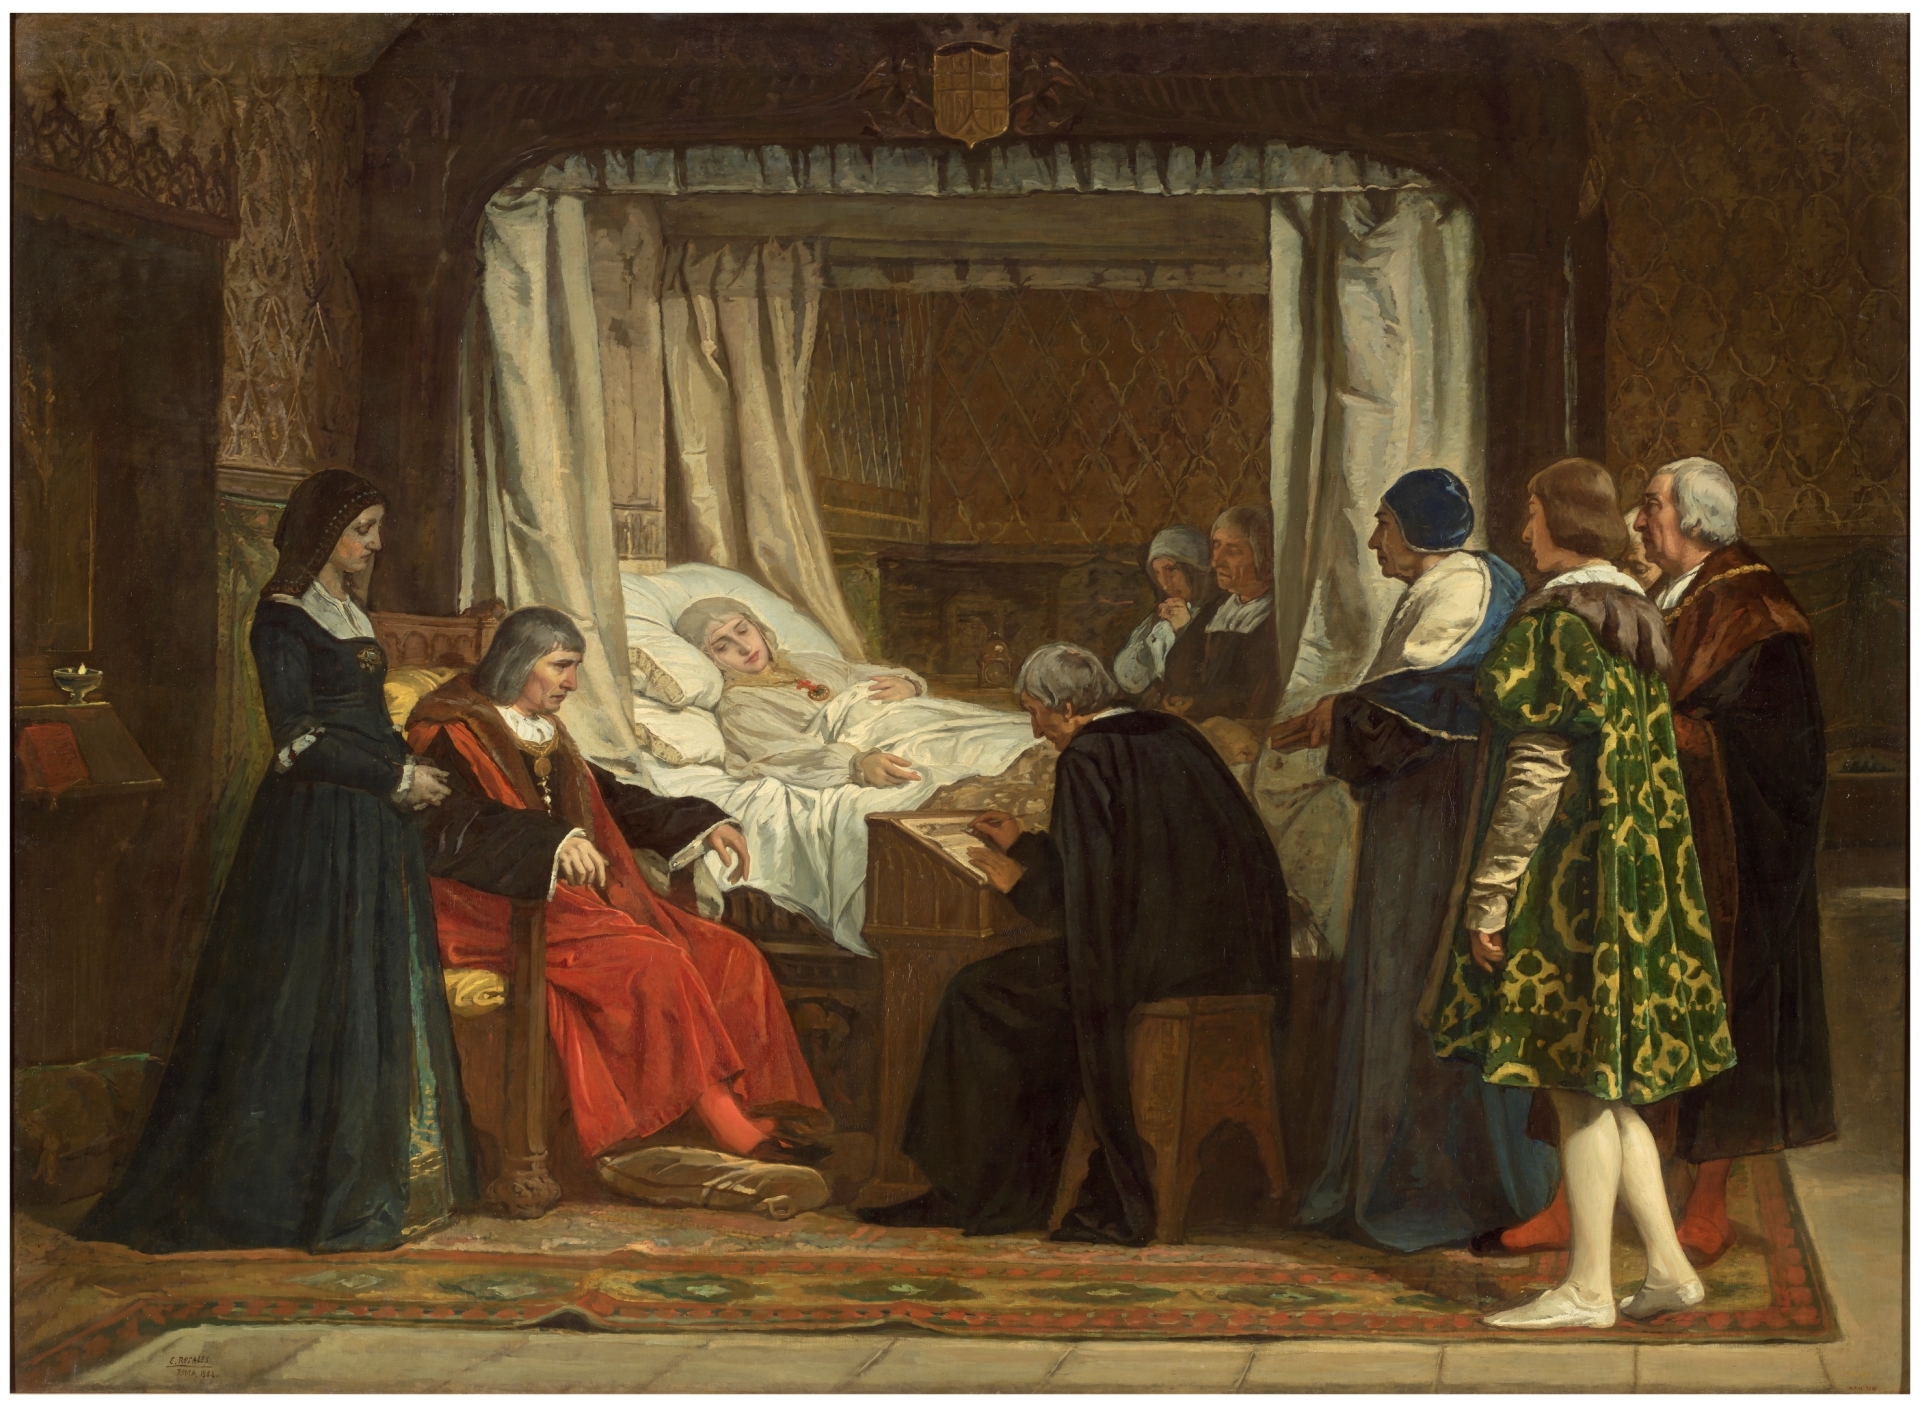 Foto del cuadro "Doña Isabel la Católica dictando su testamento" por el pintor Eduardo Rosales